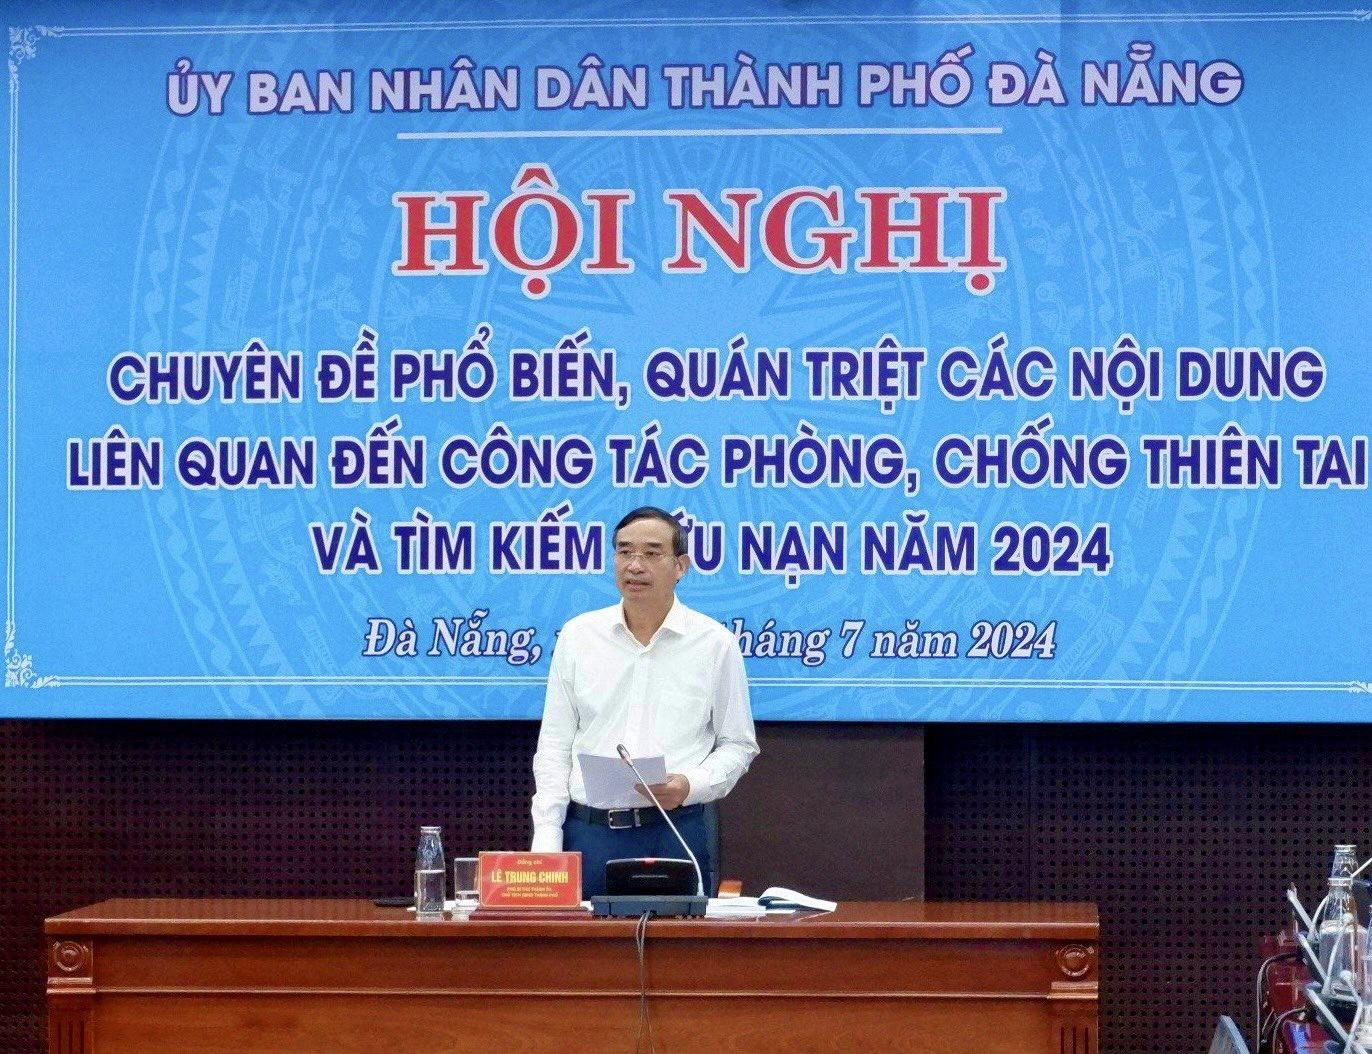 ông Lê Trung Chinh - Chủ tịch UBND TP. Đà Nẵng yêu cầu các đơn vị liên quan tiếp thu các ý kiến, kiến nghị đề xuất tại Hội nghị.